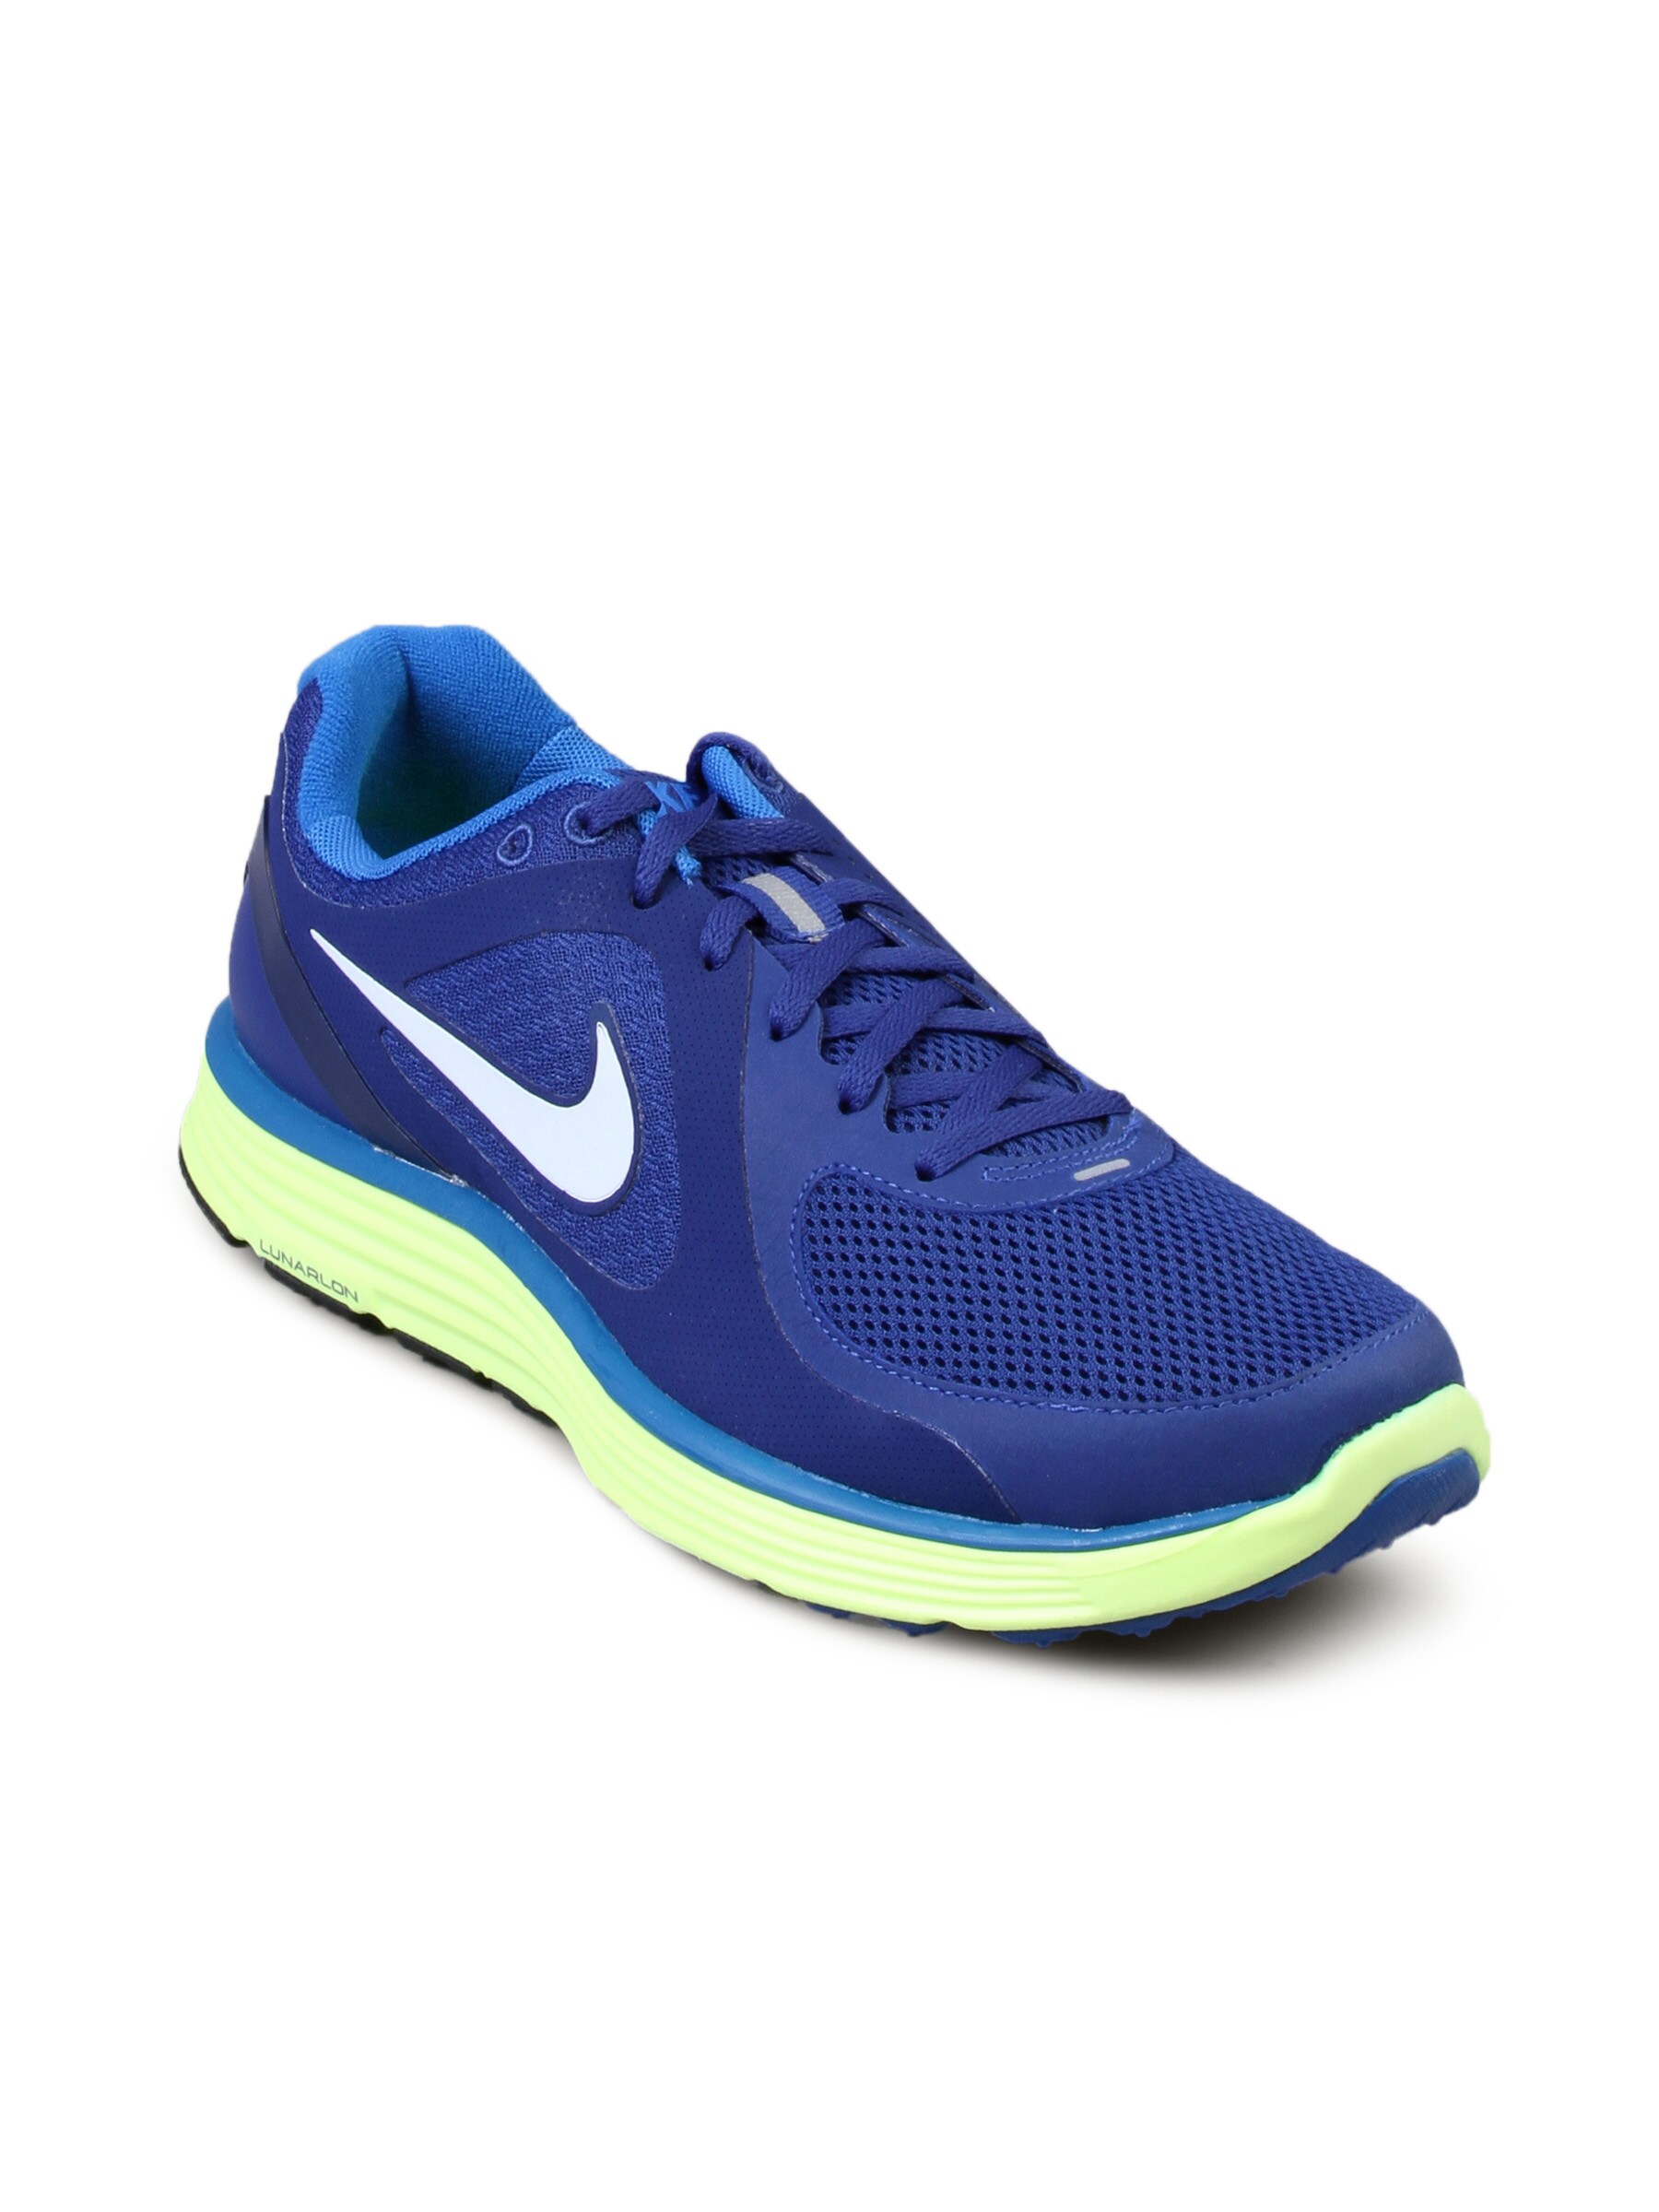 Nike Men's Lunarswift Blue Shoe